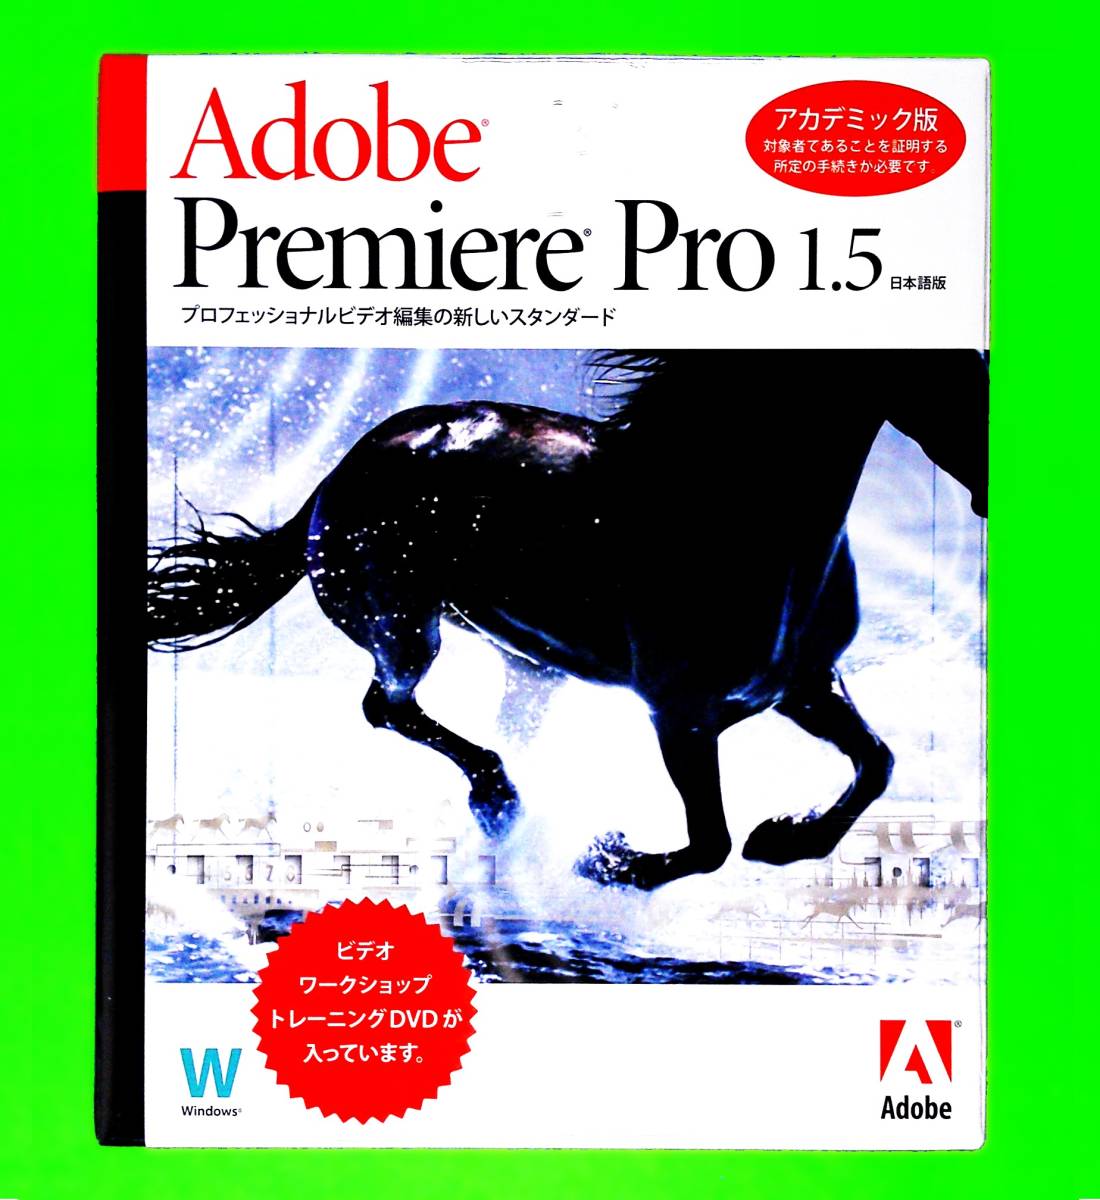 【368】Adobe Premiere Pro 1.5 アカデミック Windows版 未開封 アドビ プレミア プロ (動画,映像,ムービー,ビデオ)の編集/加工/制作ソフト_画像1